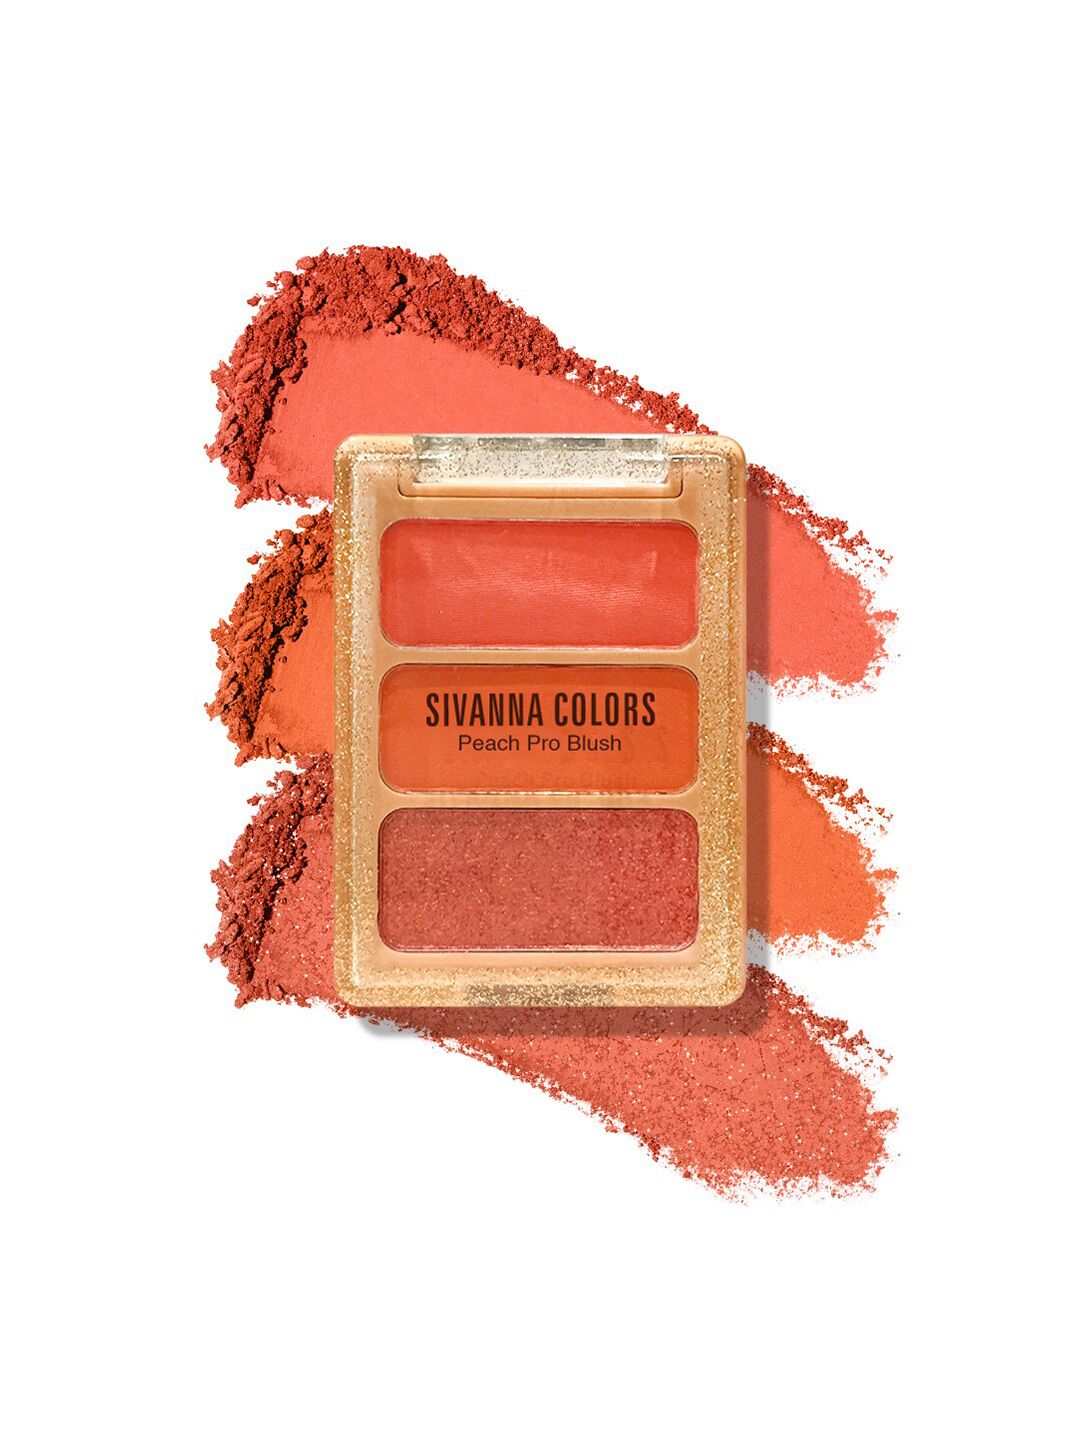 Sivanna Colors Peach Pro Blush Palette - HF6030 03 Price in India